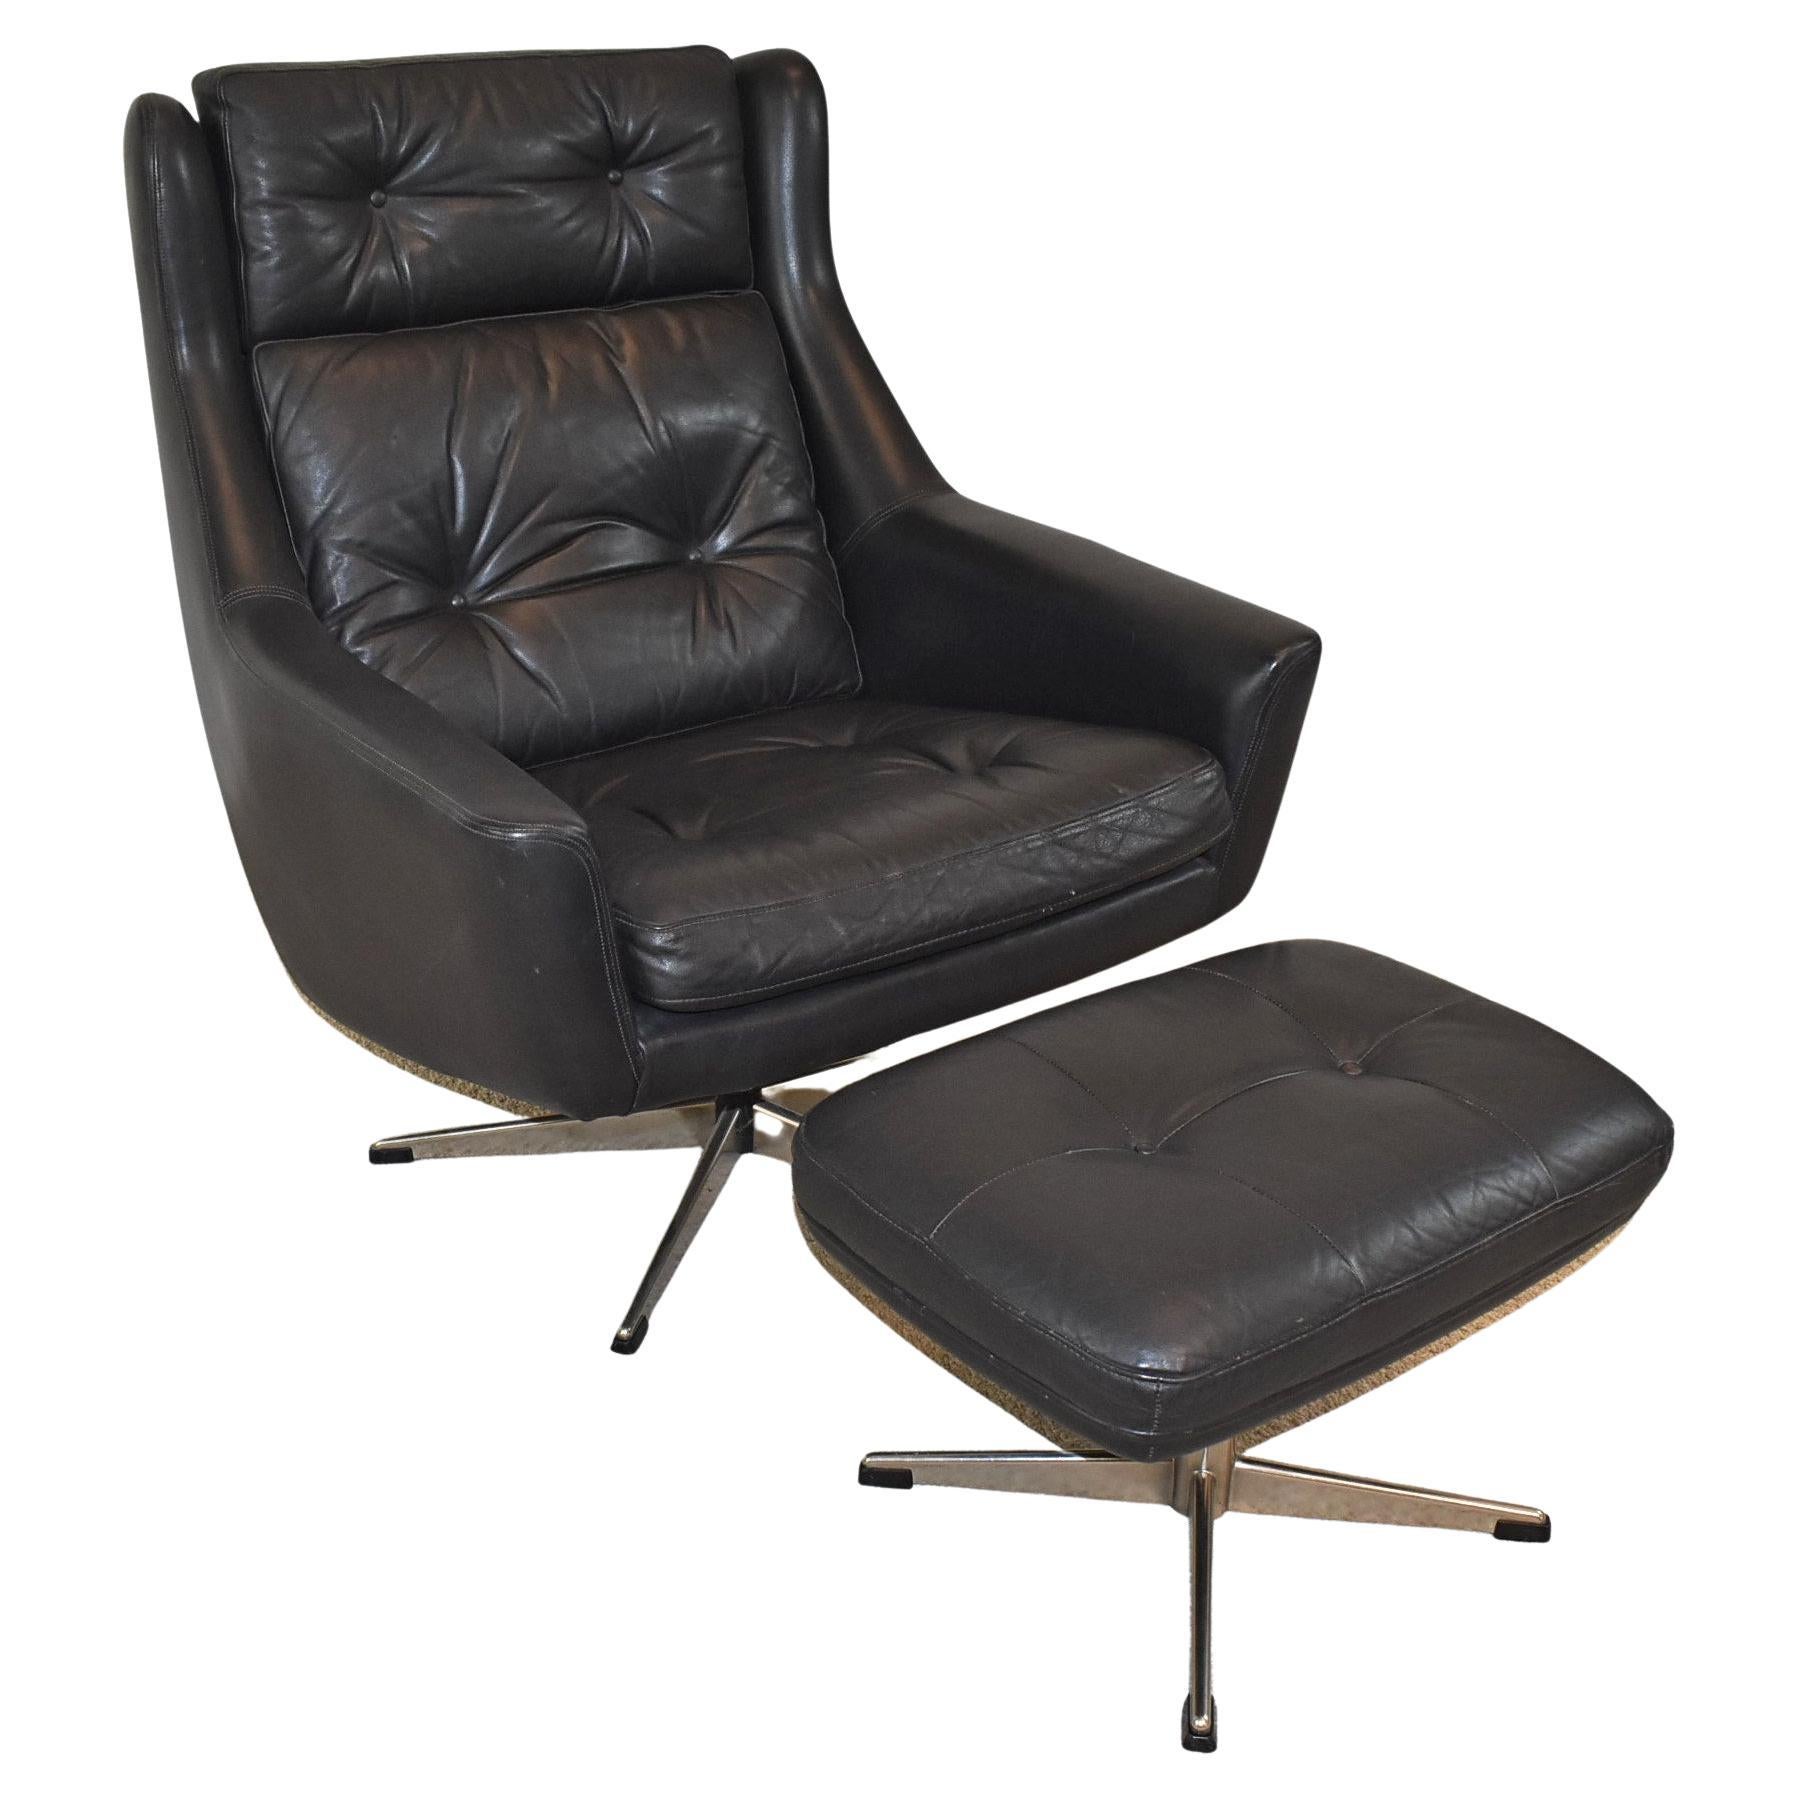 Erhardsen & Andersen, Stuhl „Siesta“ mit Ottomane, schwarzes Leder, Loungesessel